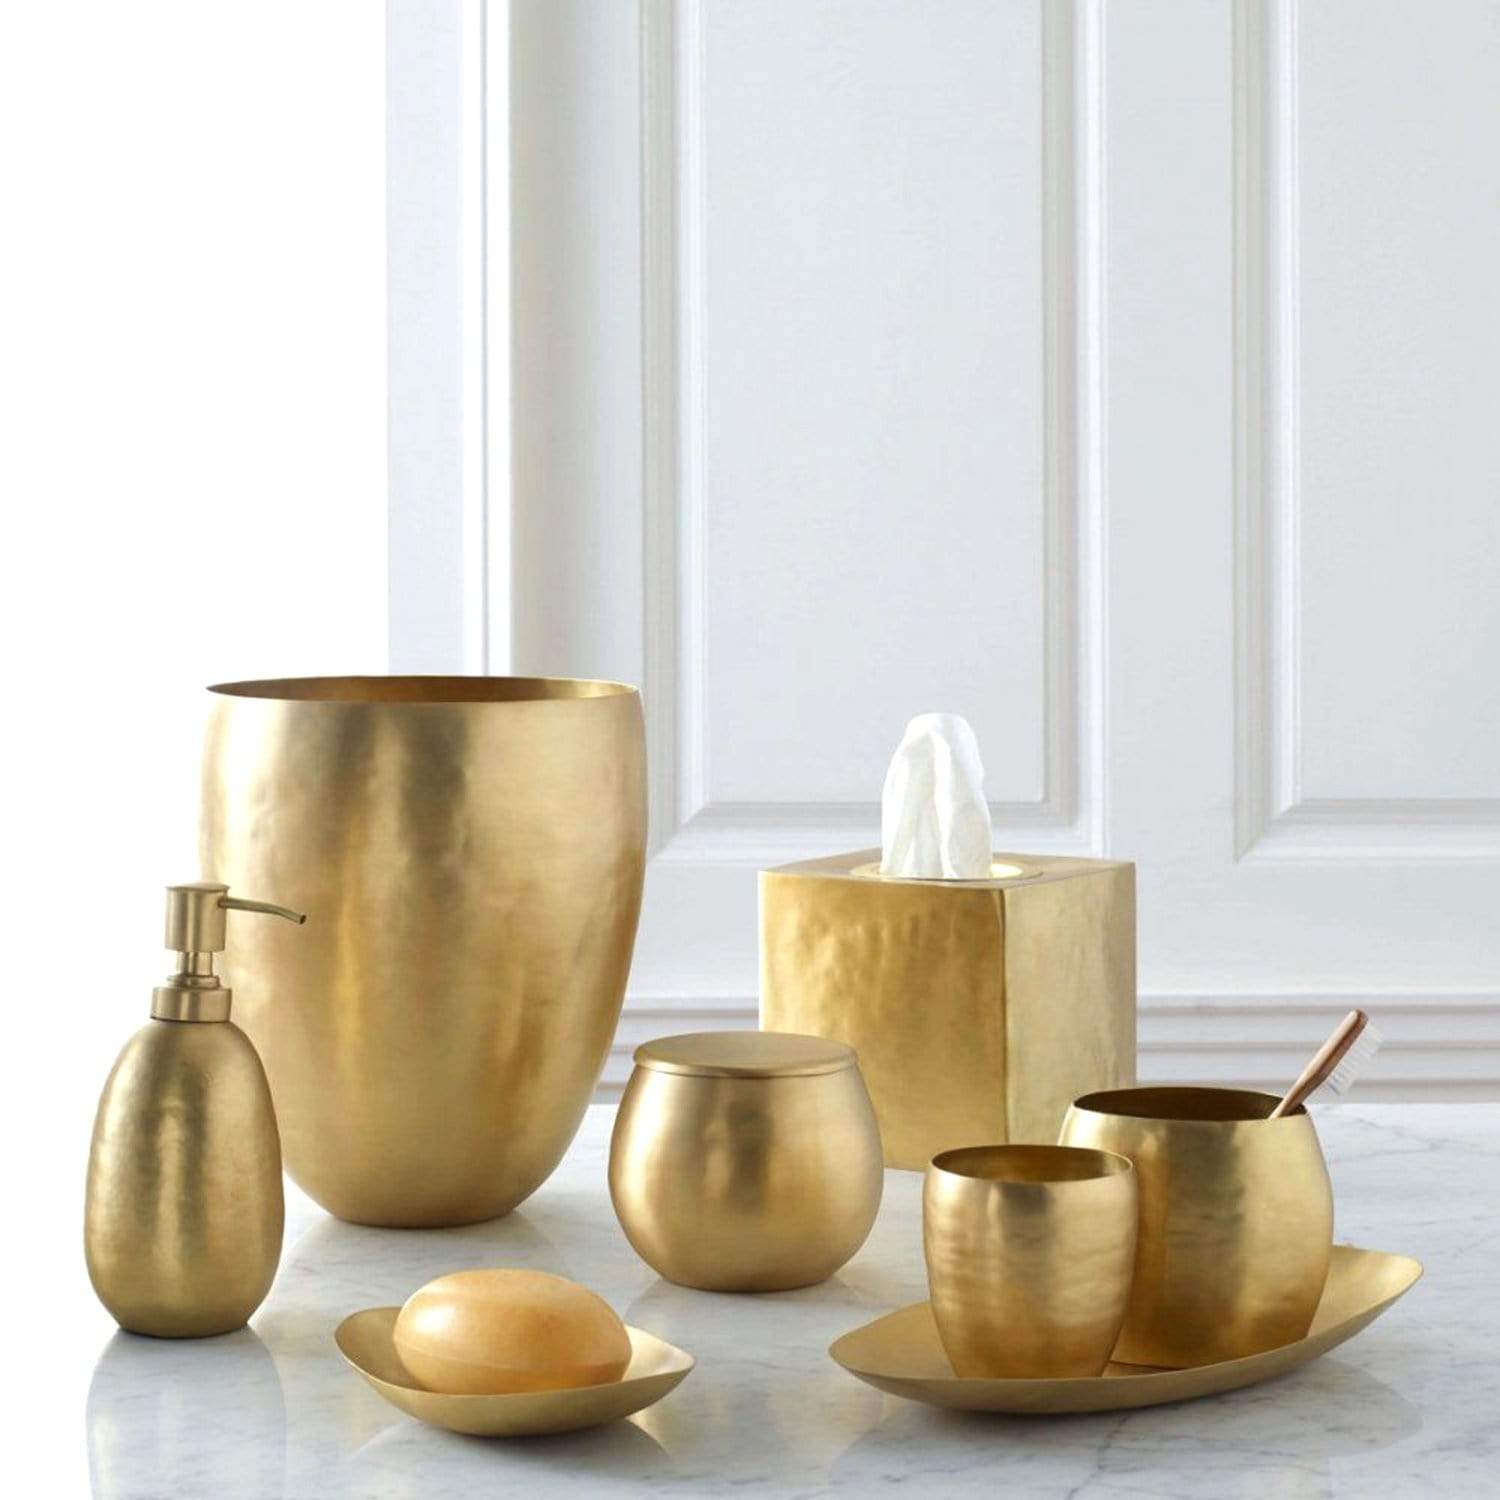 Kassatex Nile Brass Tray - Gold - ANL-TR - Jashanmal Home